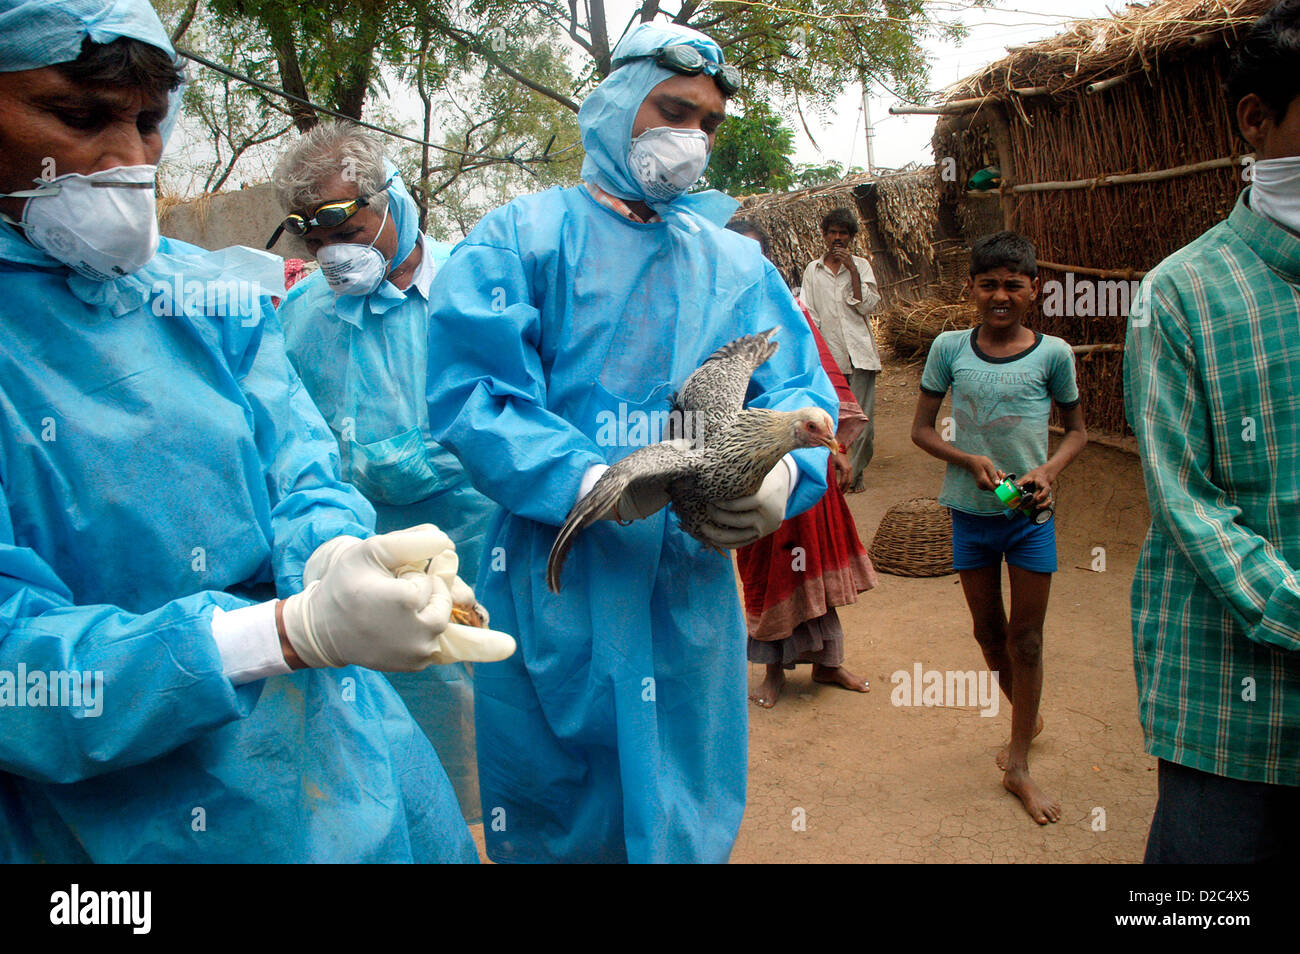 Les villageois main sur les travailleurs de la Santé du gouvernement de la volaille domestique pour l'abattage des poulets infectés dans les maisons des villageois d'arrière-cour Banque D'Images